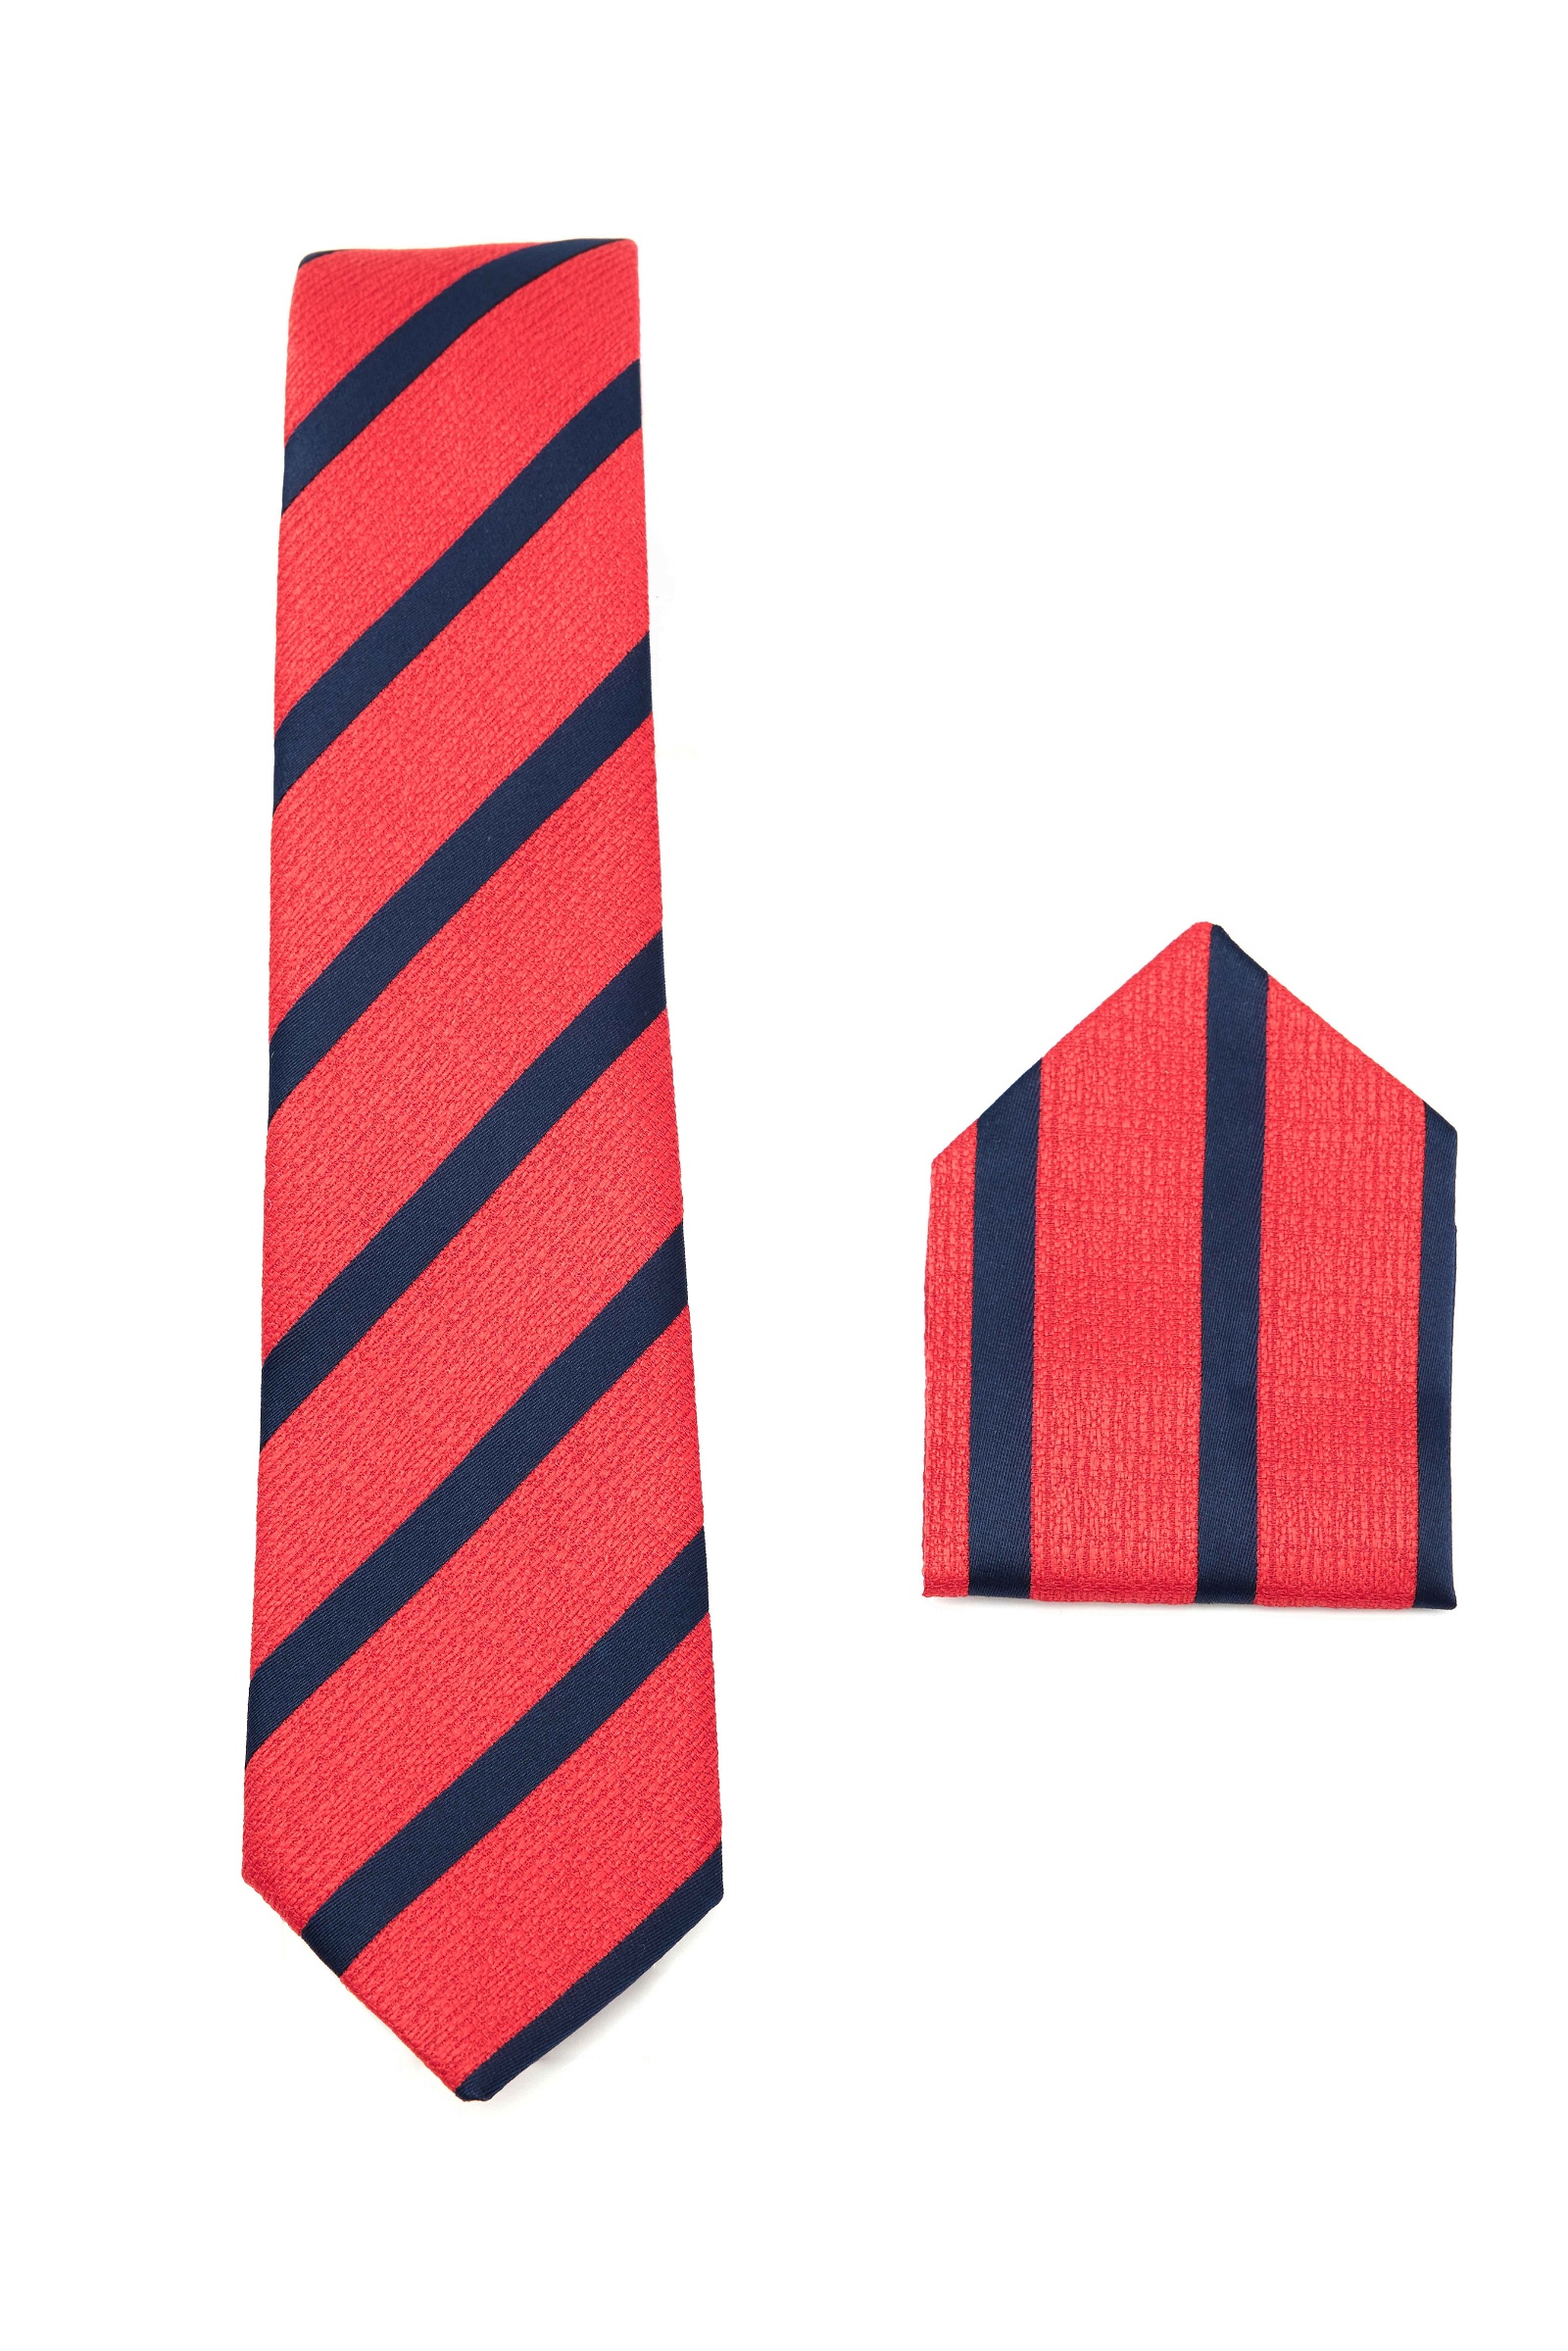   Tie